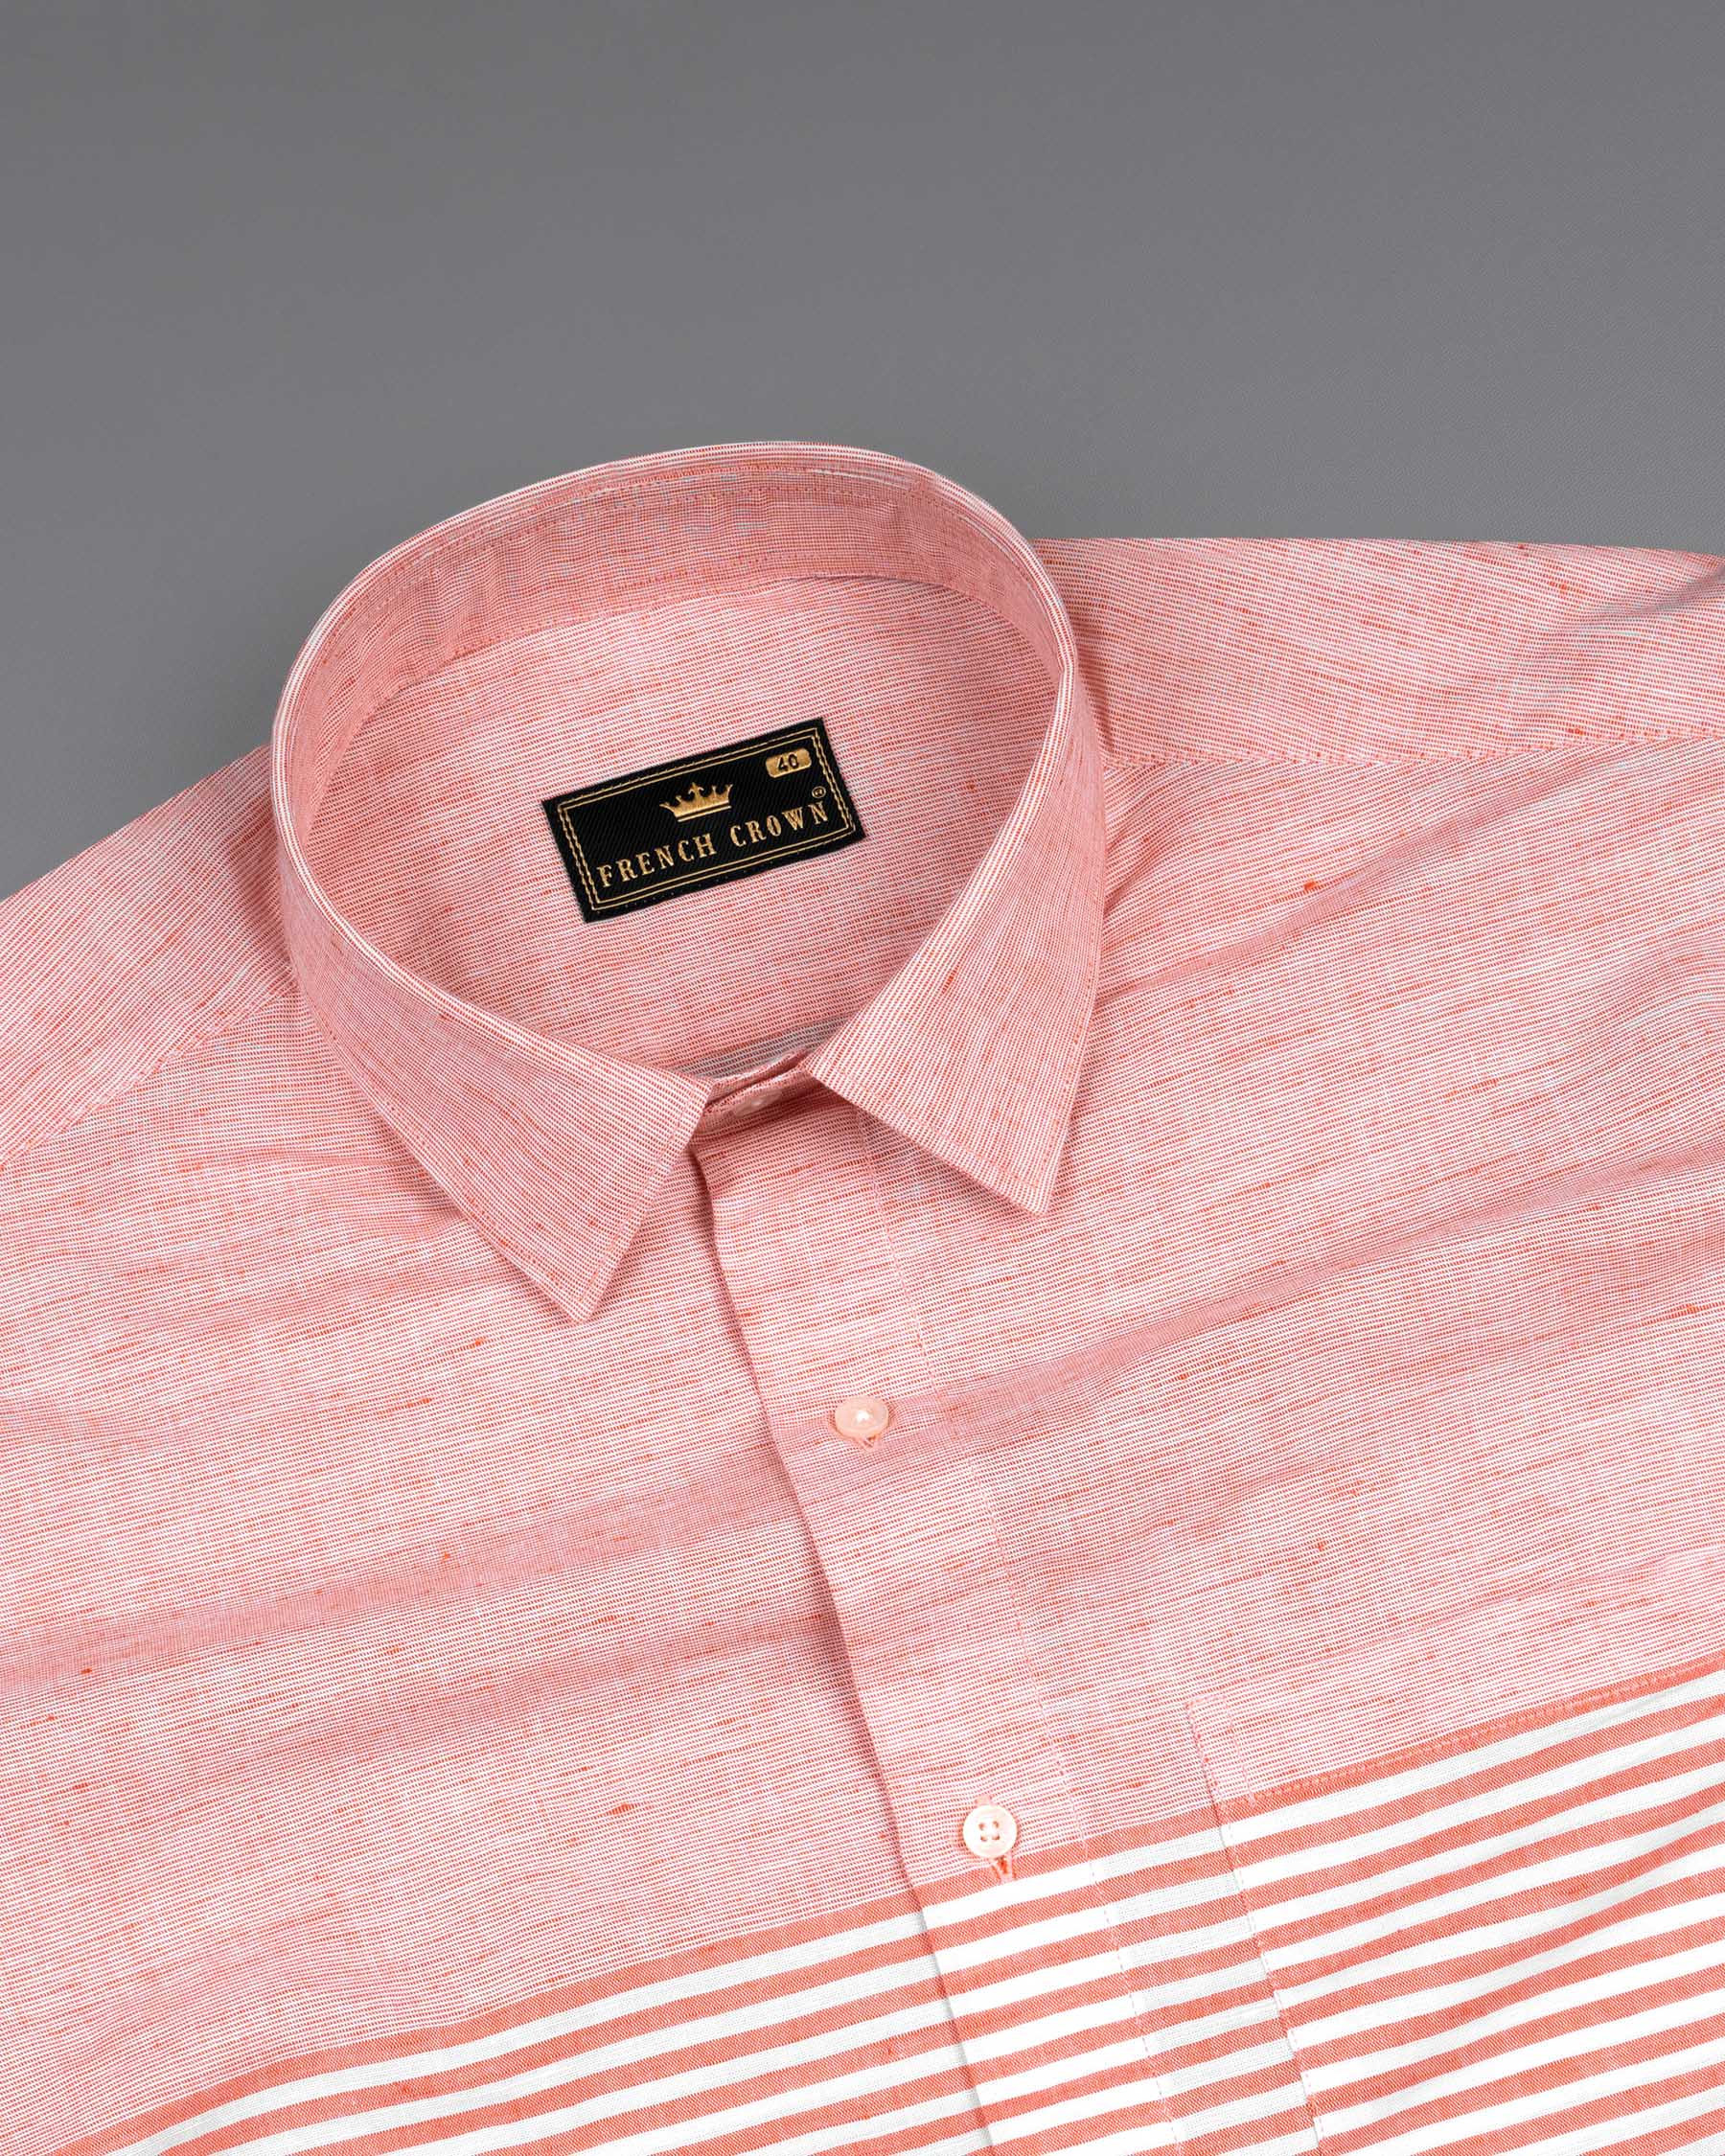 Blush Peach and White Striped Luxurious Linen Shirt